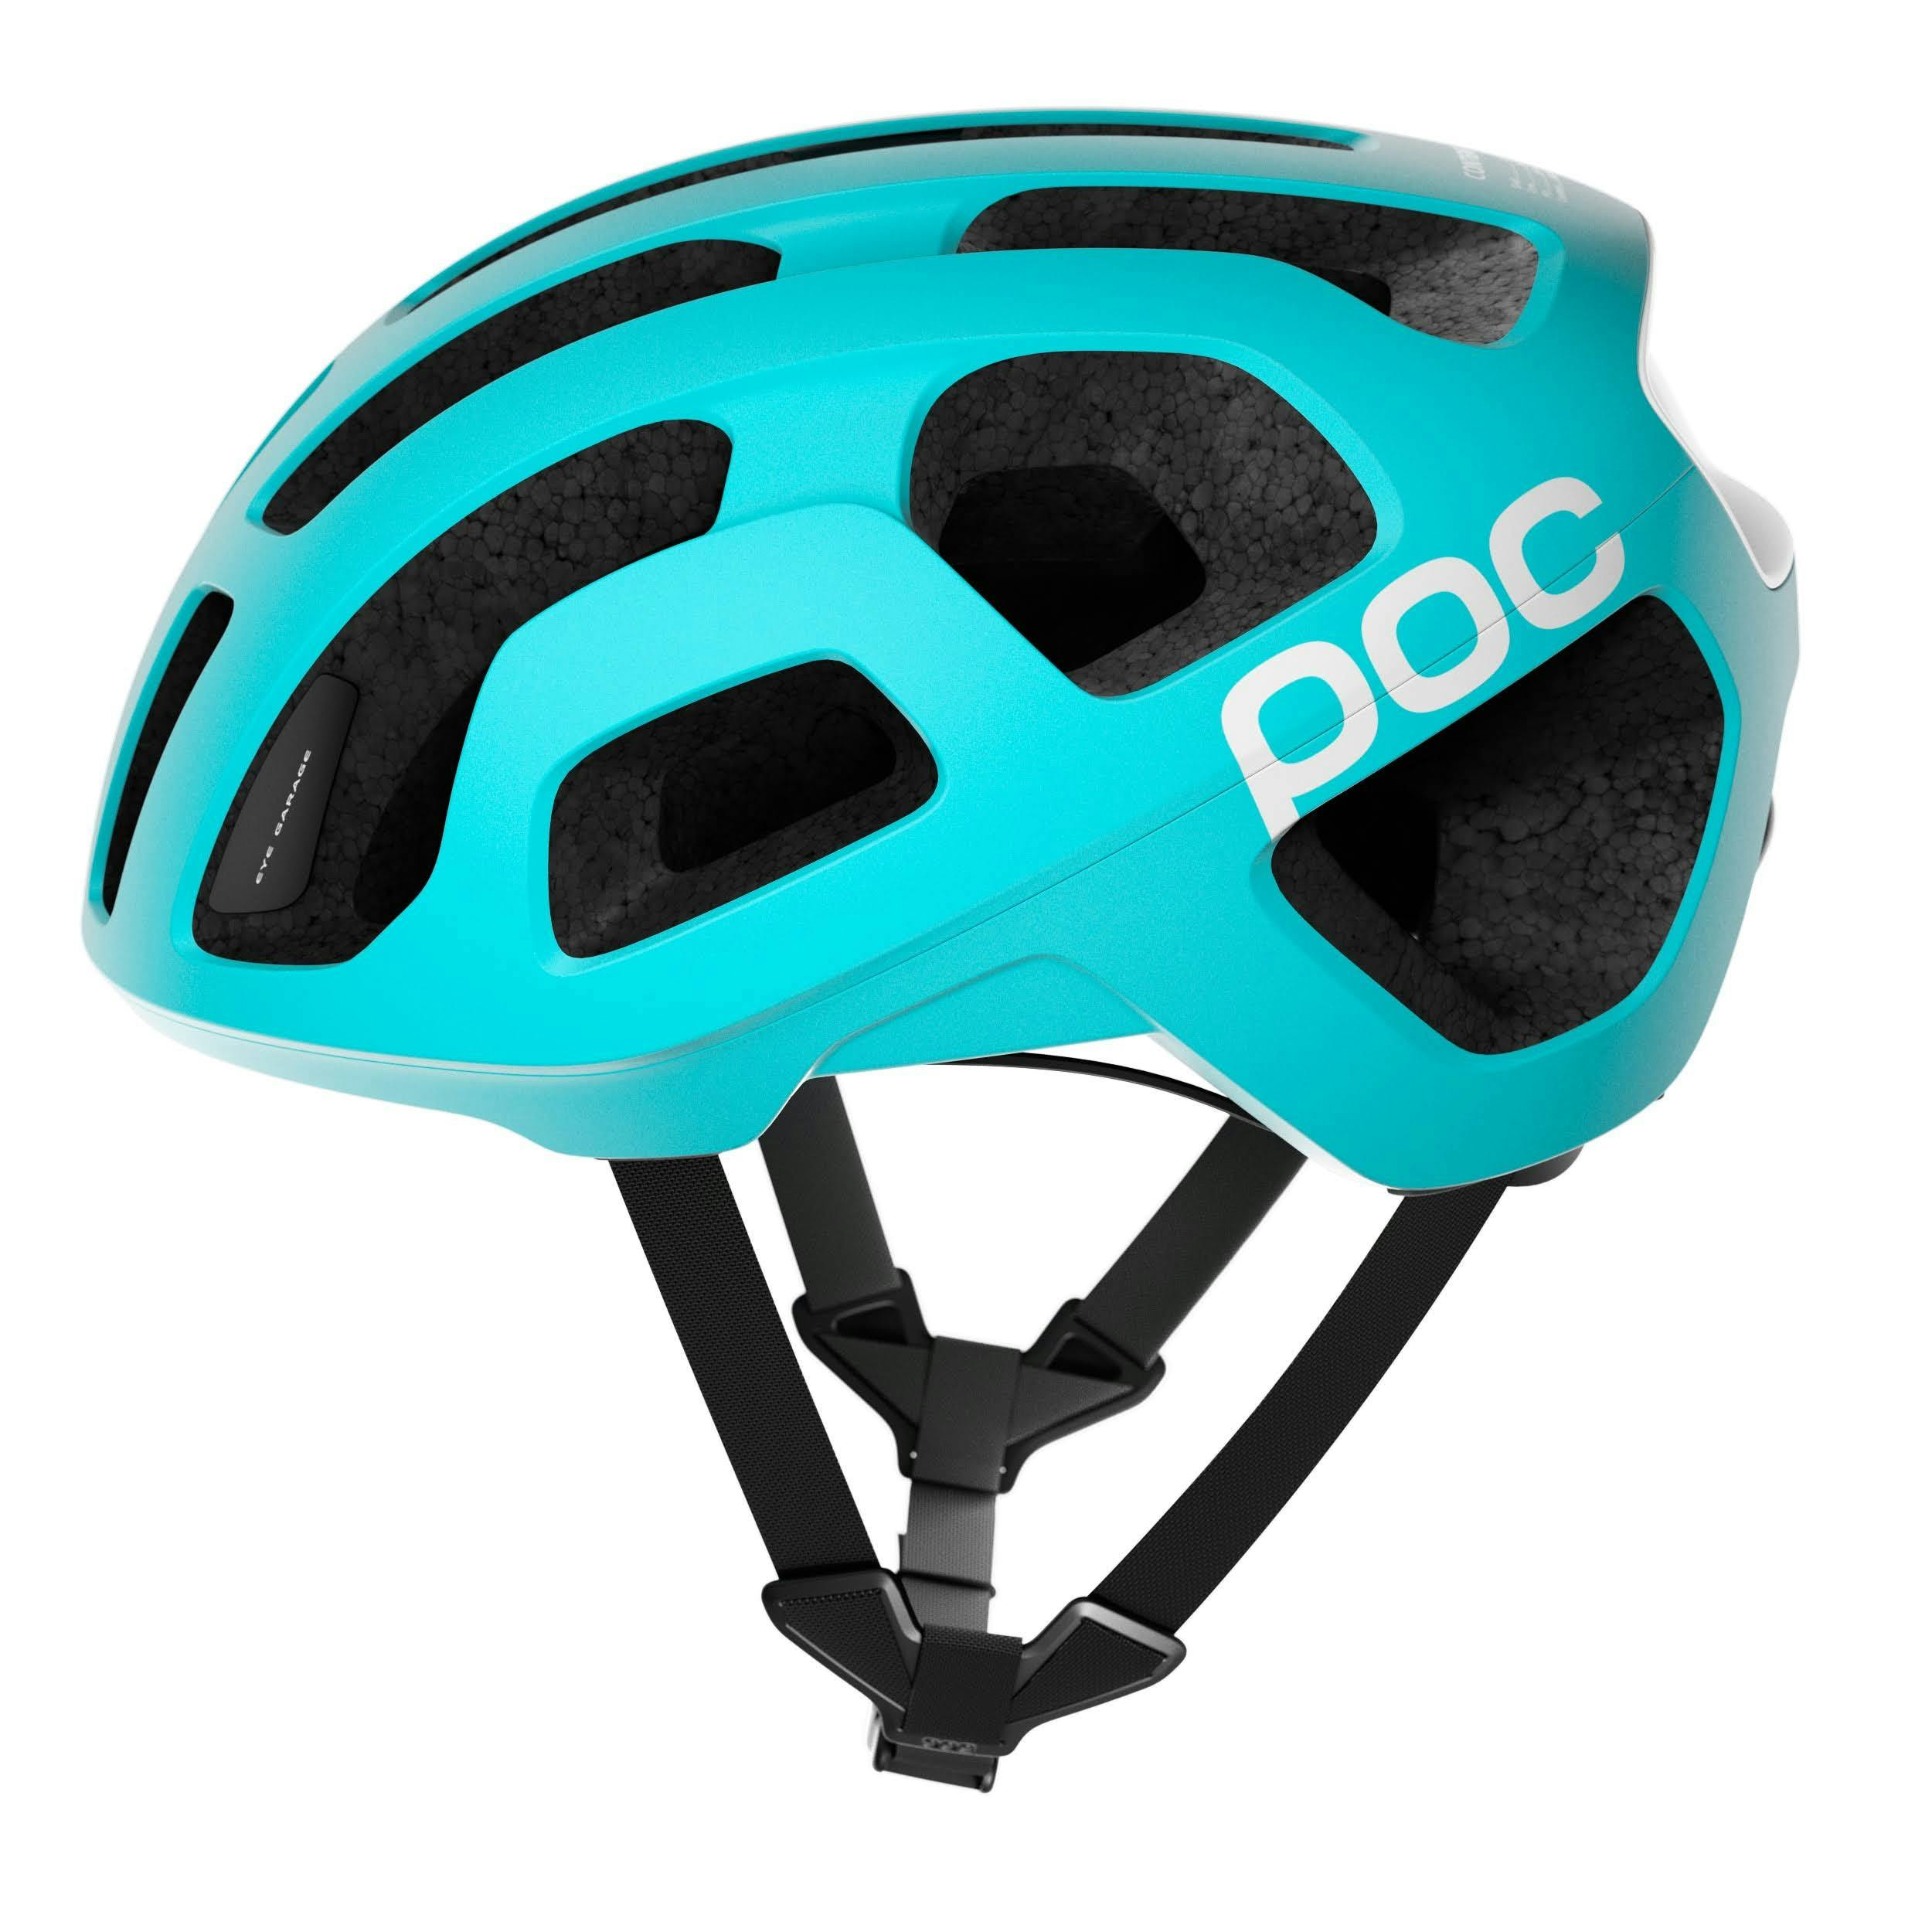 A bright blue road biking helmet